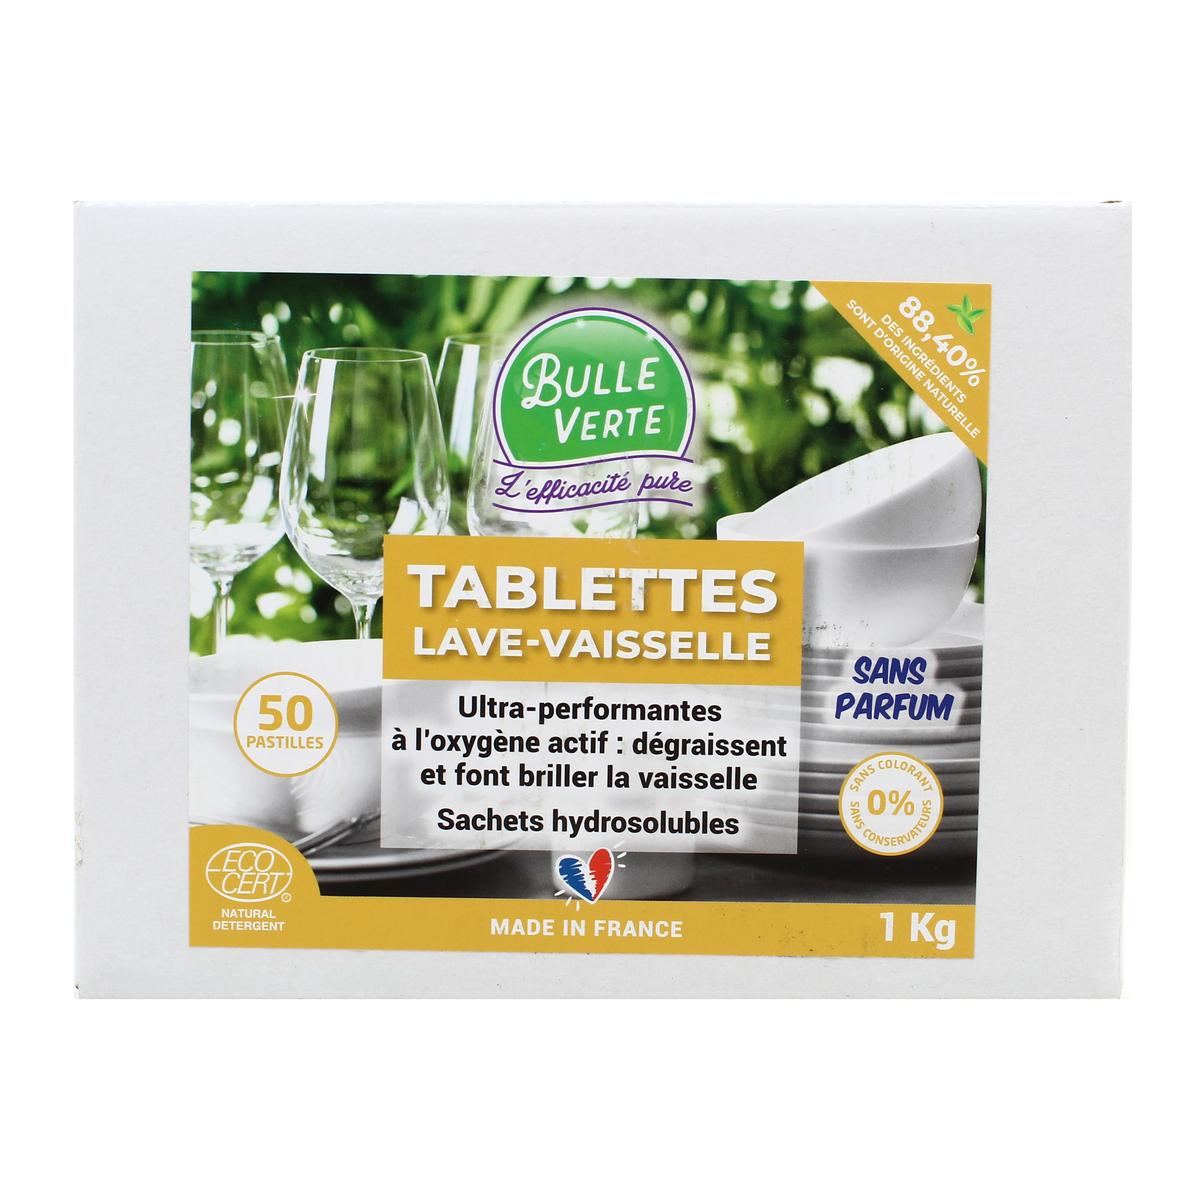 Tablettes lave-vaisselle (52 pastilles)